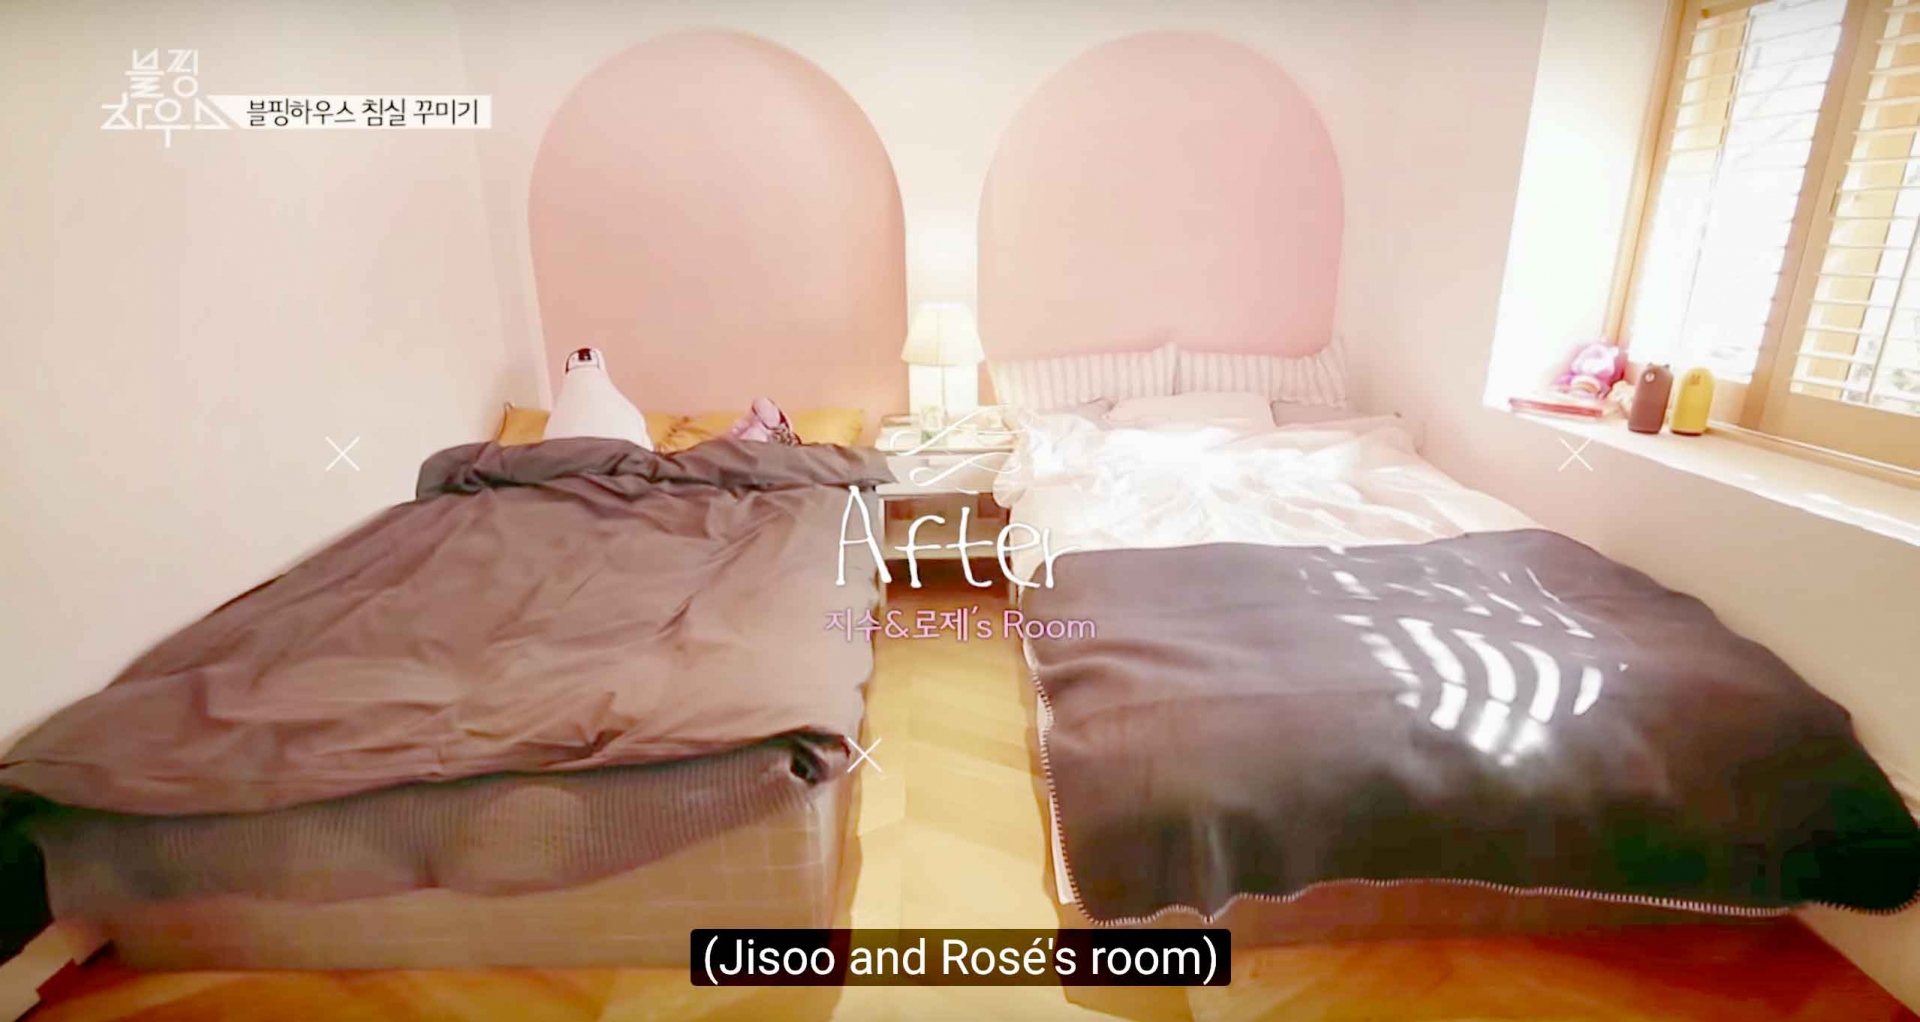 Đây là phòng của Jisoo và Rose